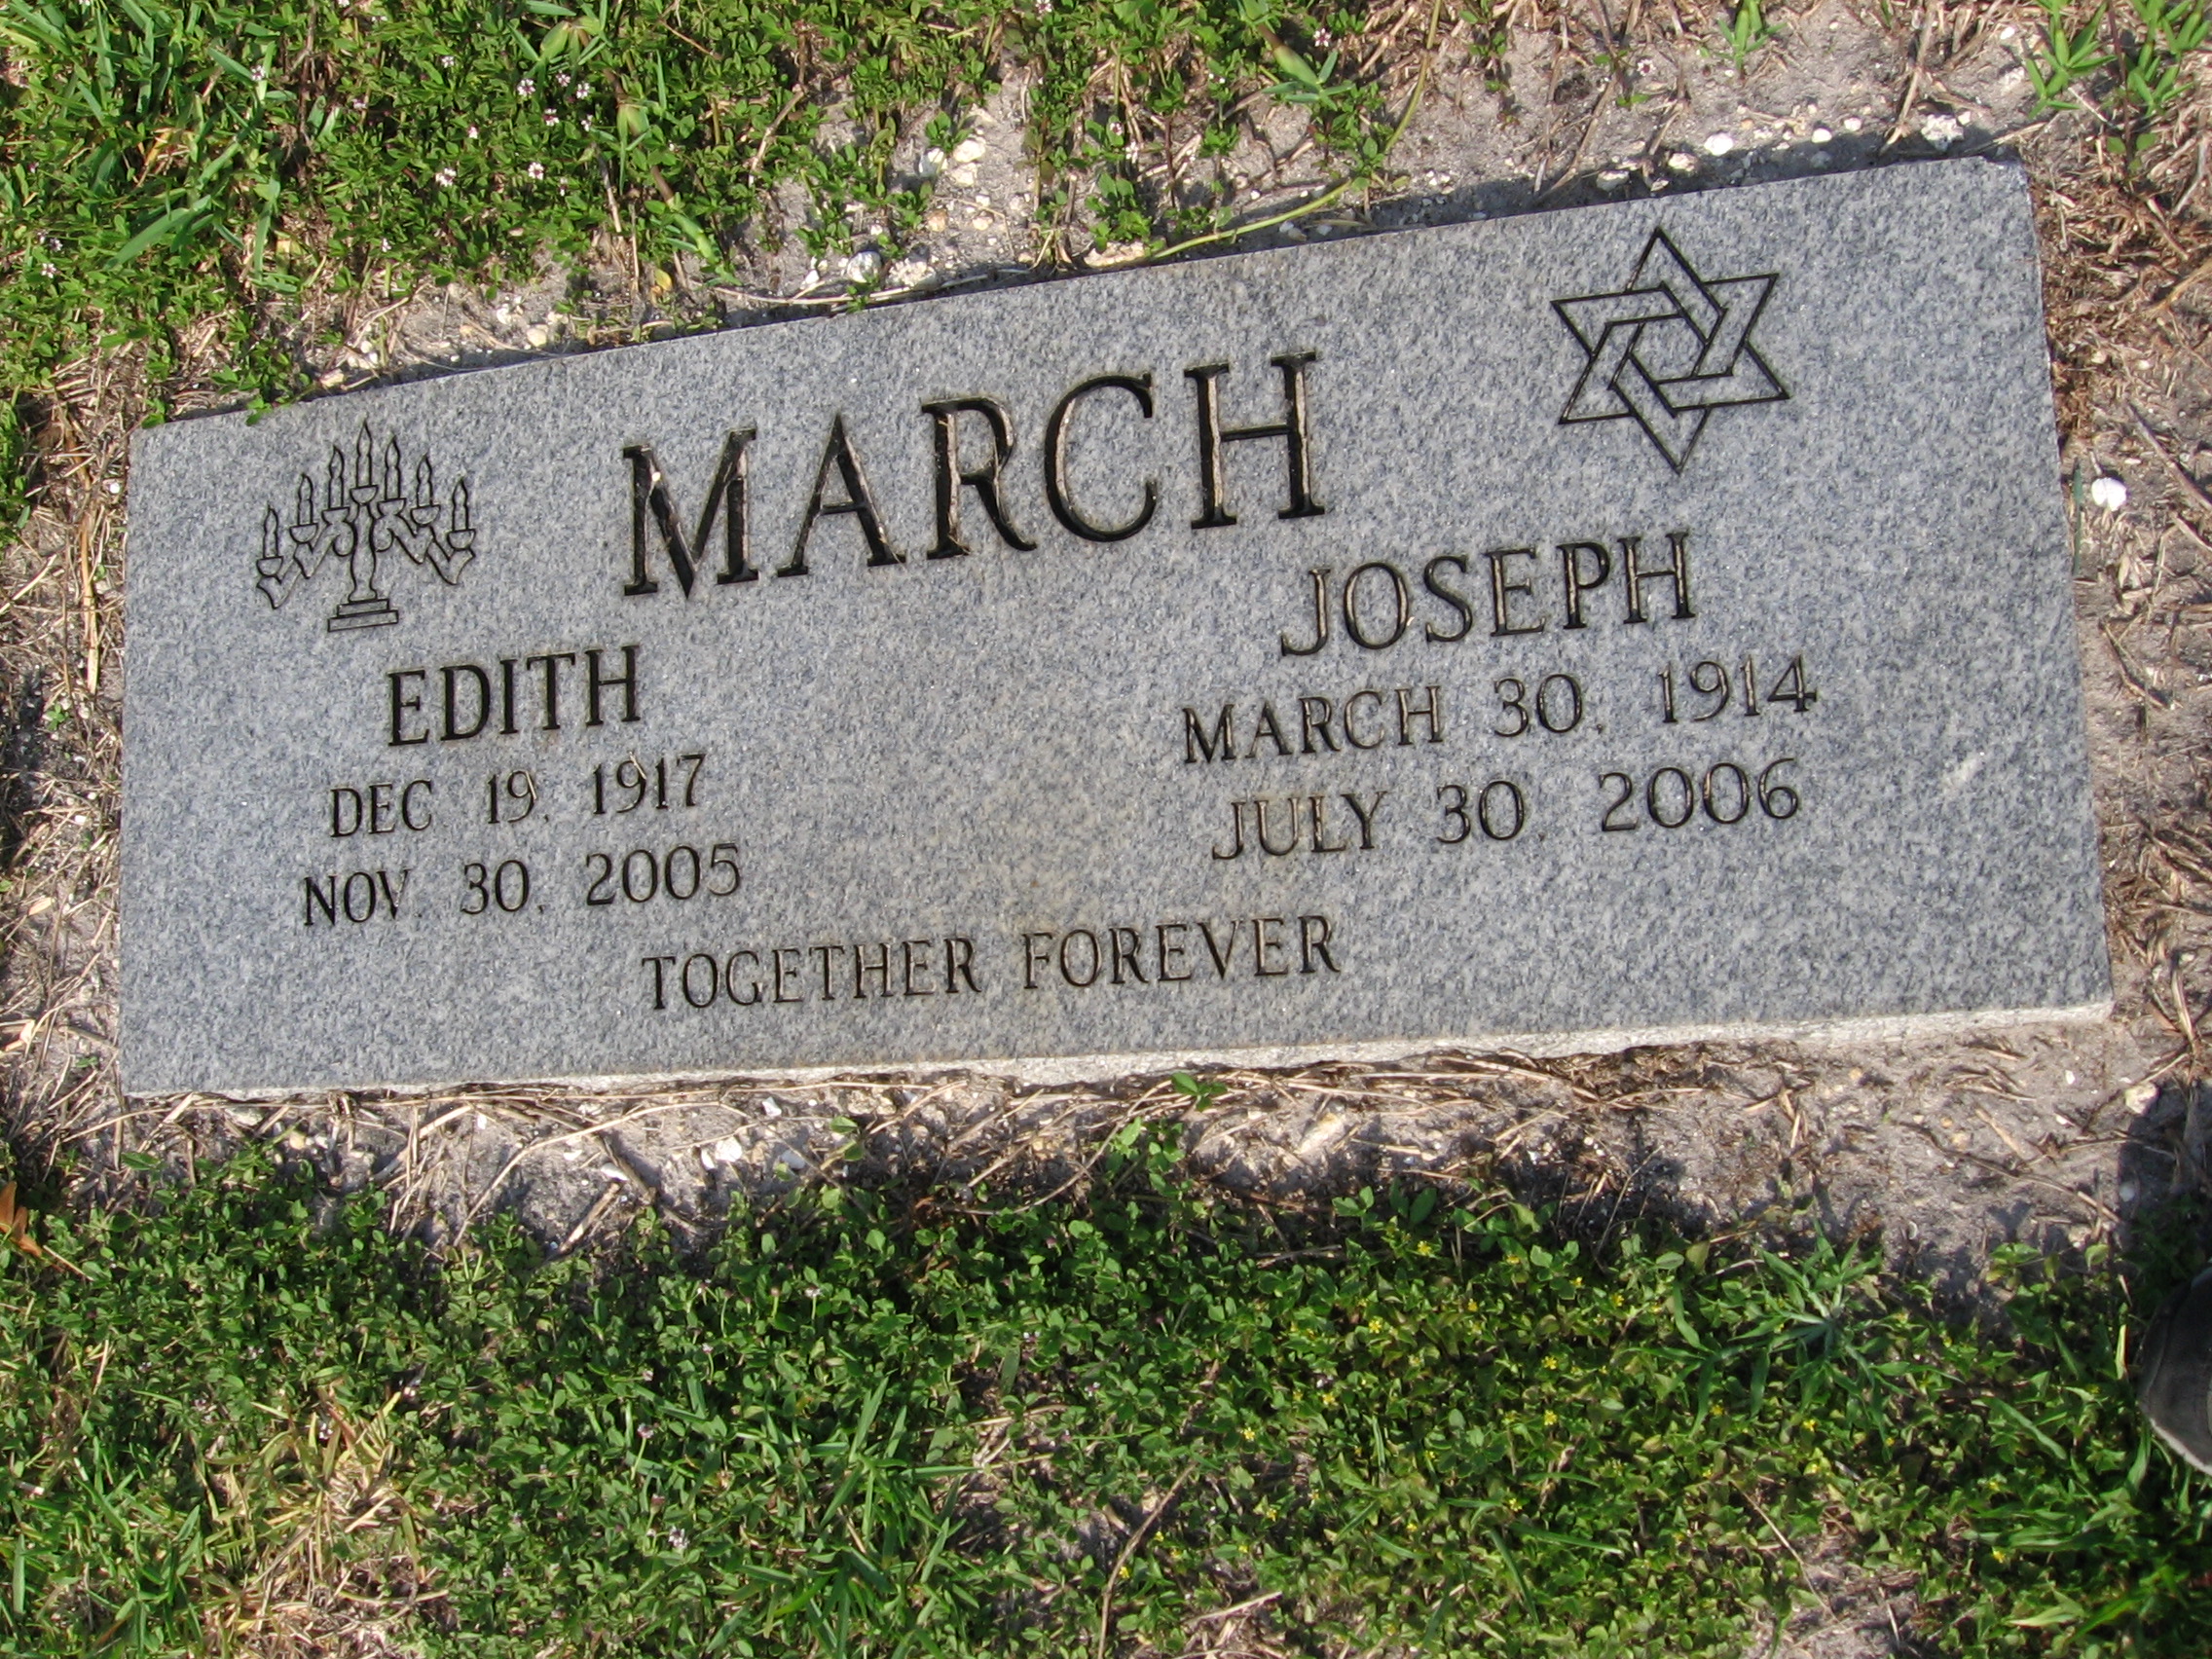 Joseph March